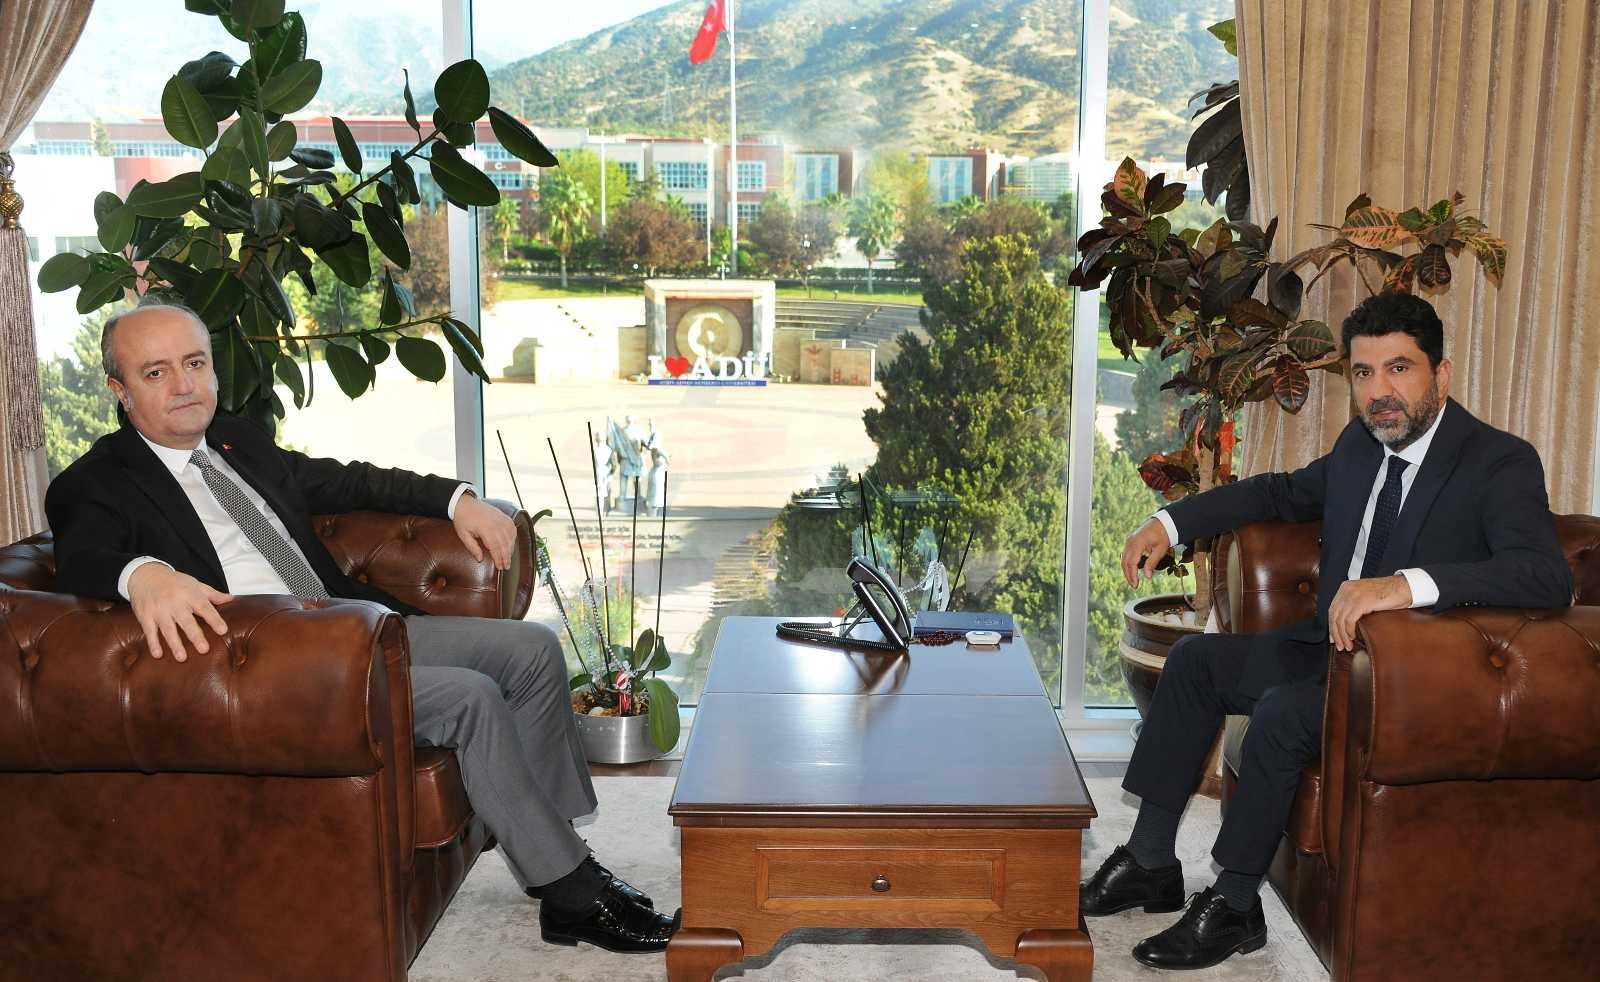 Aydın Cumhuriyet Başsavcısı Eker, ADÜ Rektörü Aldemir ile görüştü #aydin